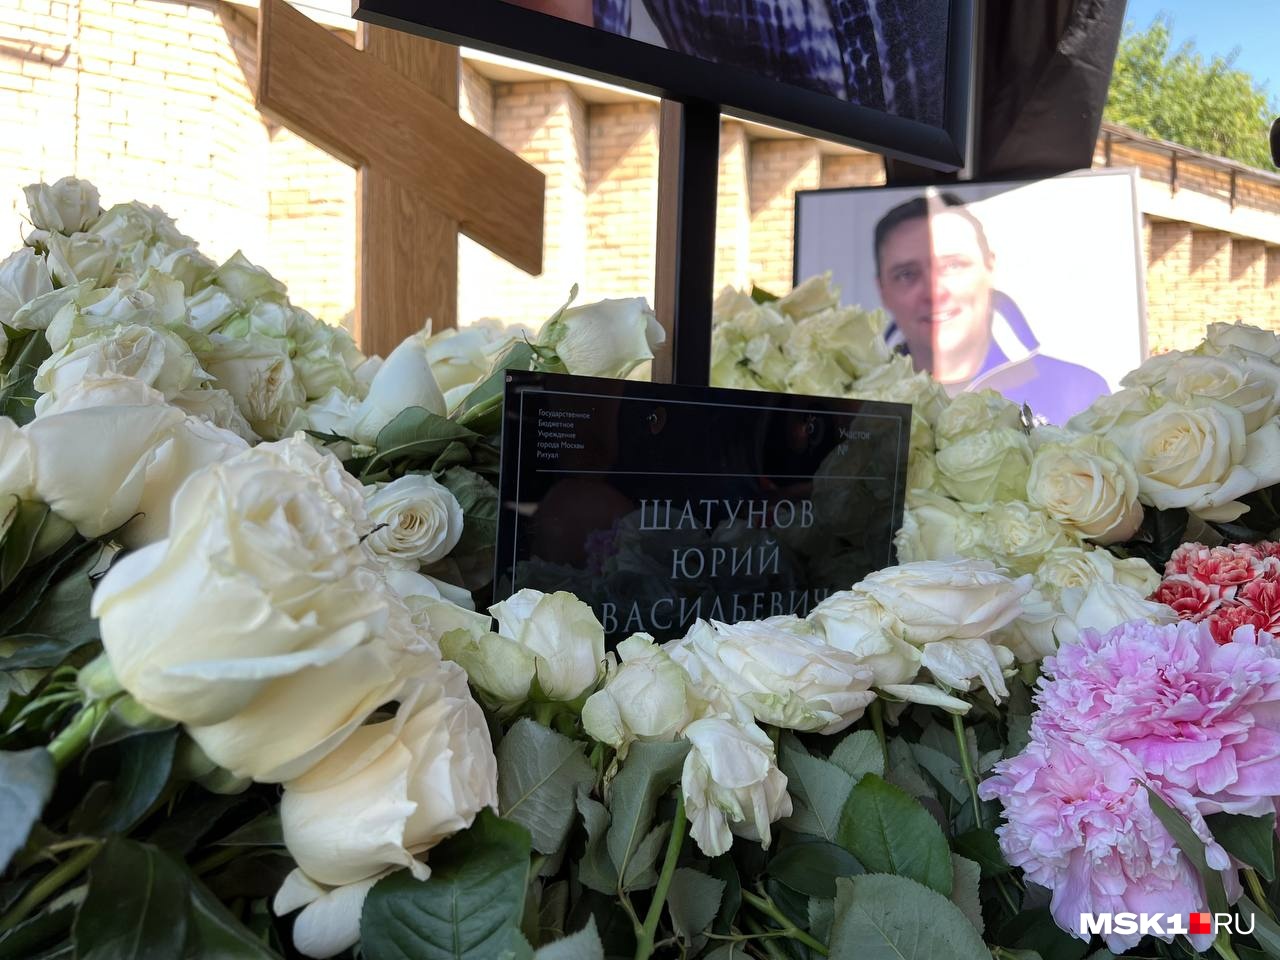 Где жил шатунов последние. Могила Юры Шатунова на Троекуровском кладбище. Похороны Юрия Шатунова на Троекуровском кладбище. Шатунов похоронен на Троекуровском кладбище.